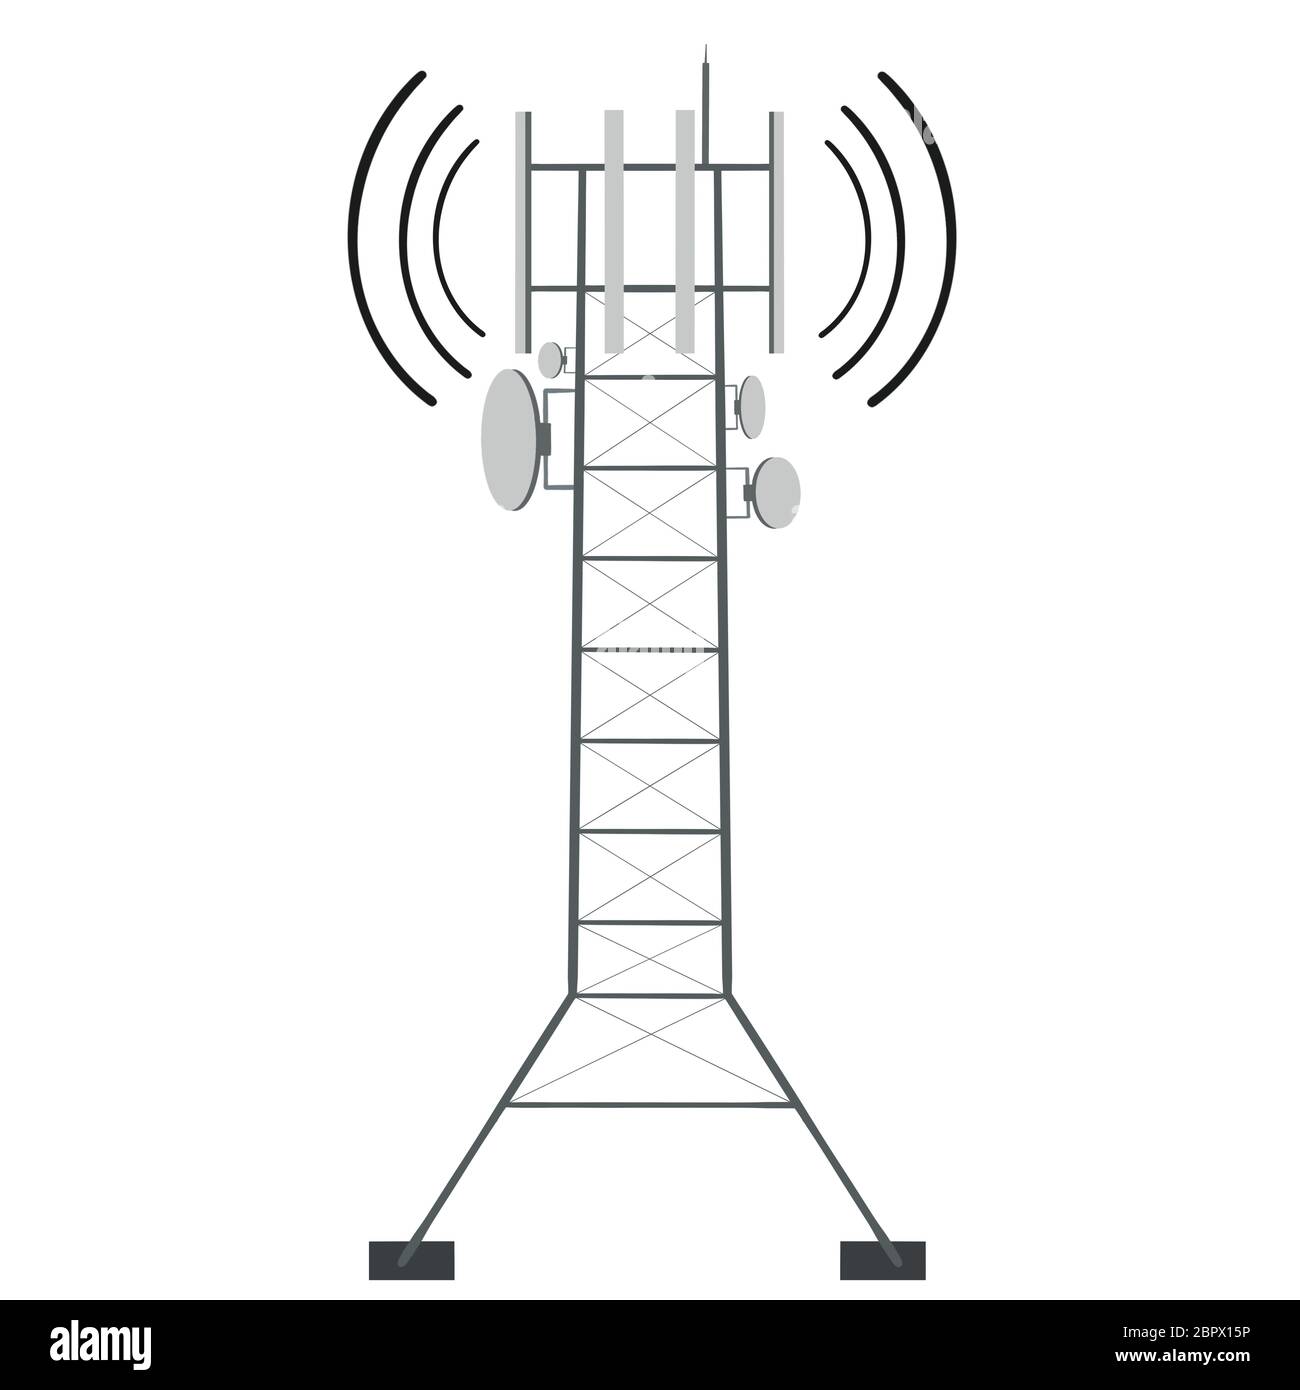 Telekommunikationsturm von 4G und 5G Mobilfunk. Basisstation des Zellstandorts auf weißem Hintergrund isoliert. Sender für drahtlose Kommunikation. Flache s Stockfoto